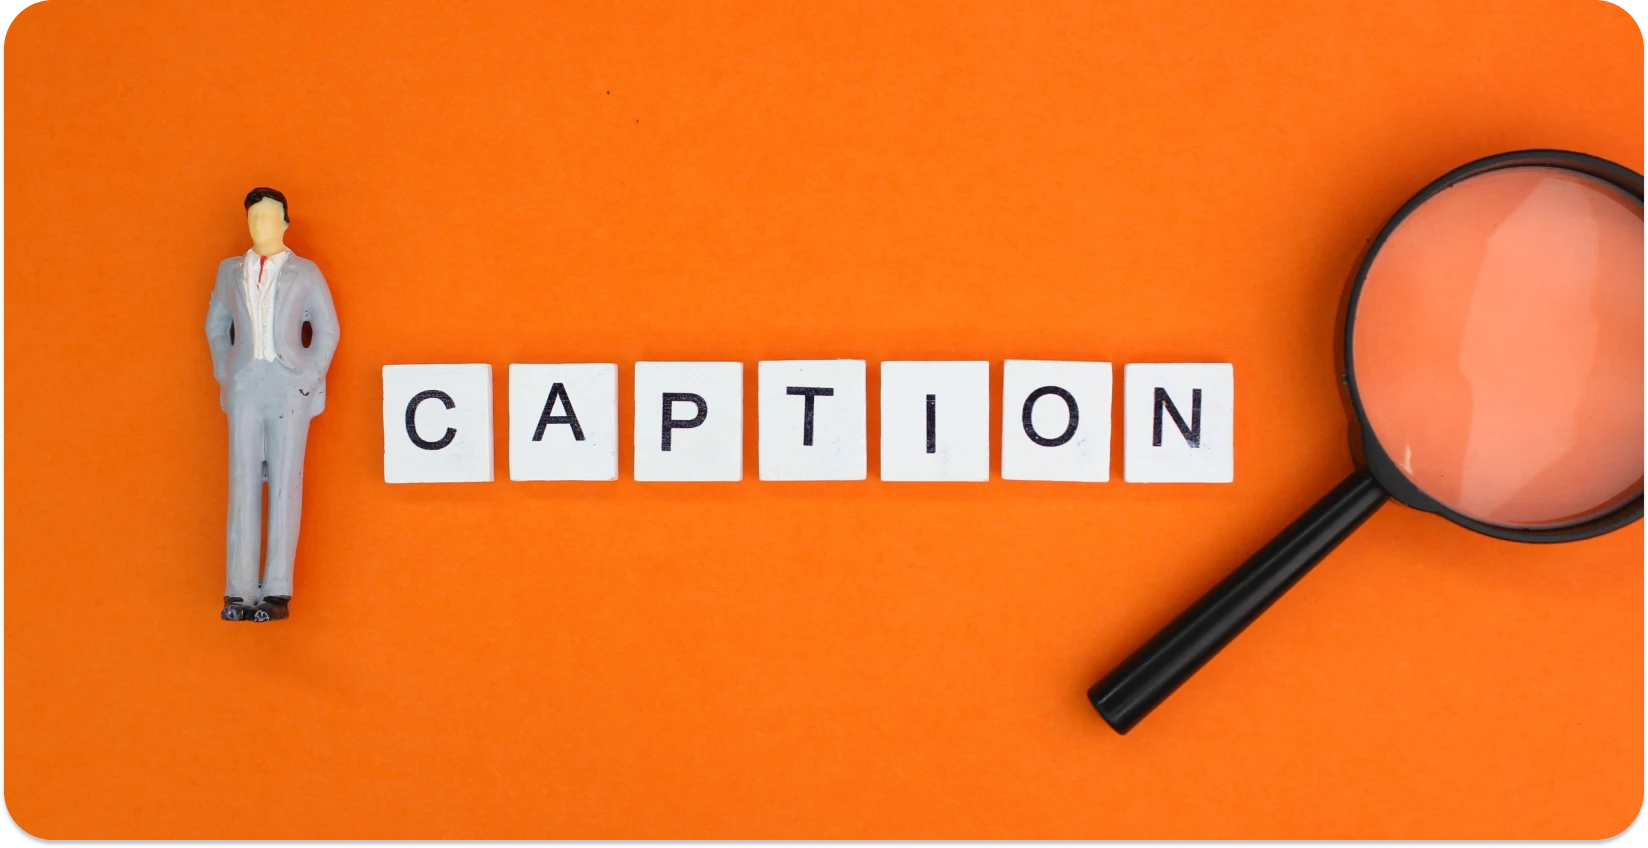 'CAPTION' 블록과 돋보기가 있는 미니어처 피규어는 캡션 디테일에 중점을 둔 것을 상징합니다.